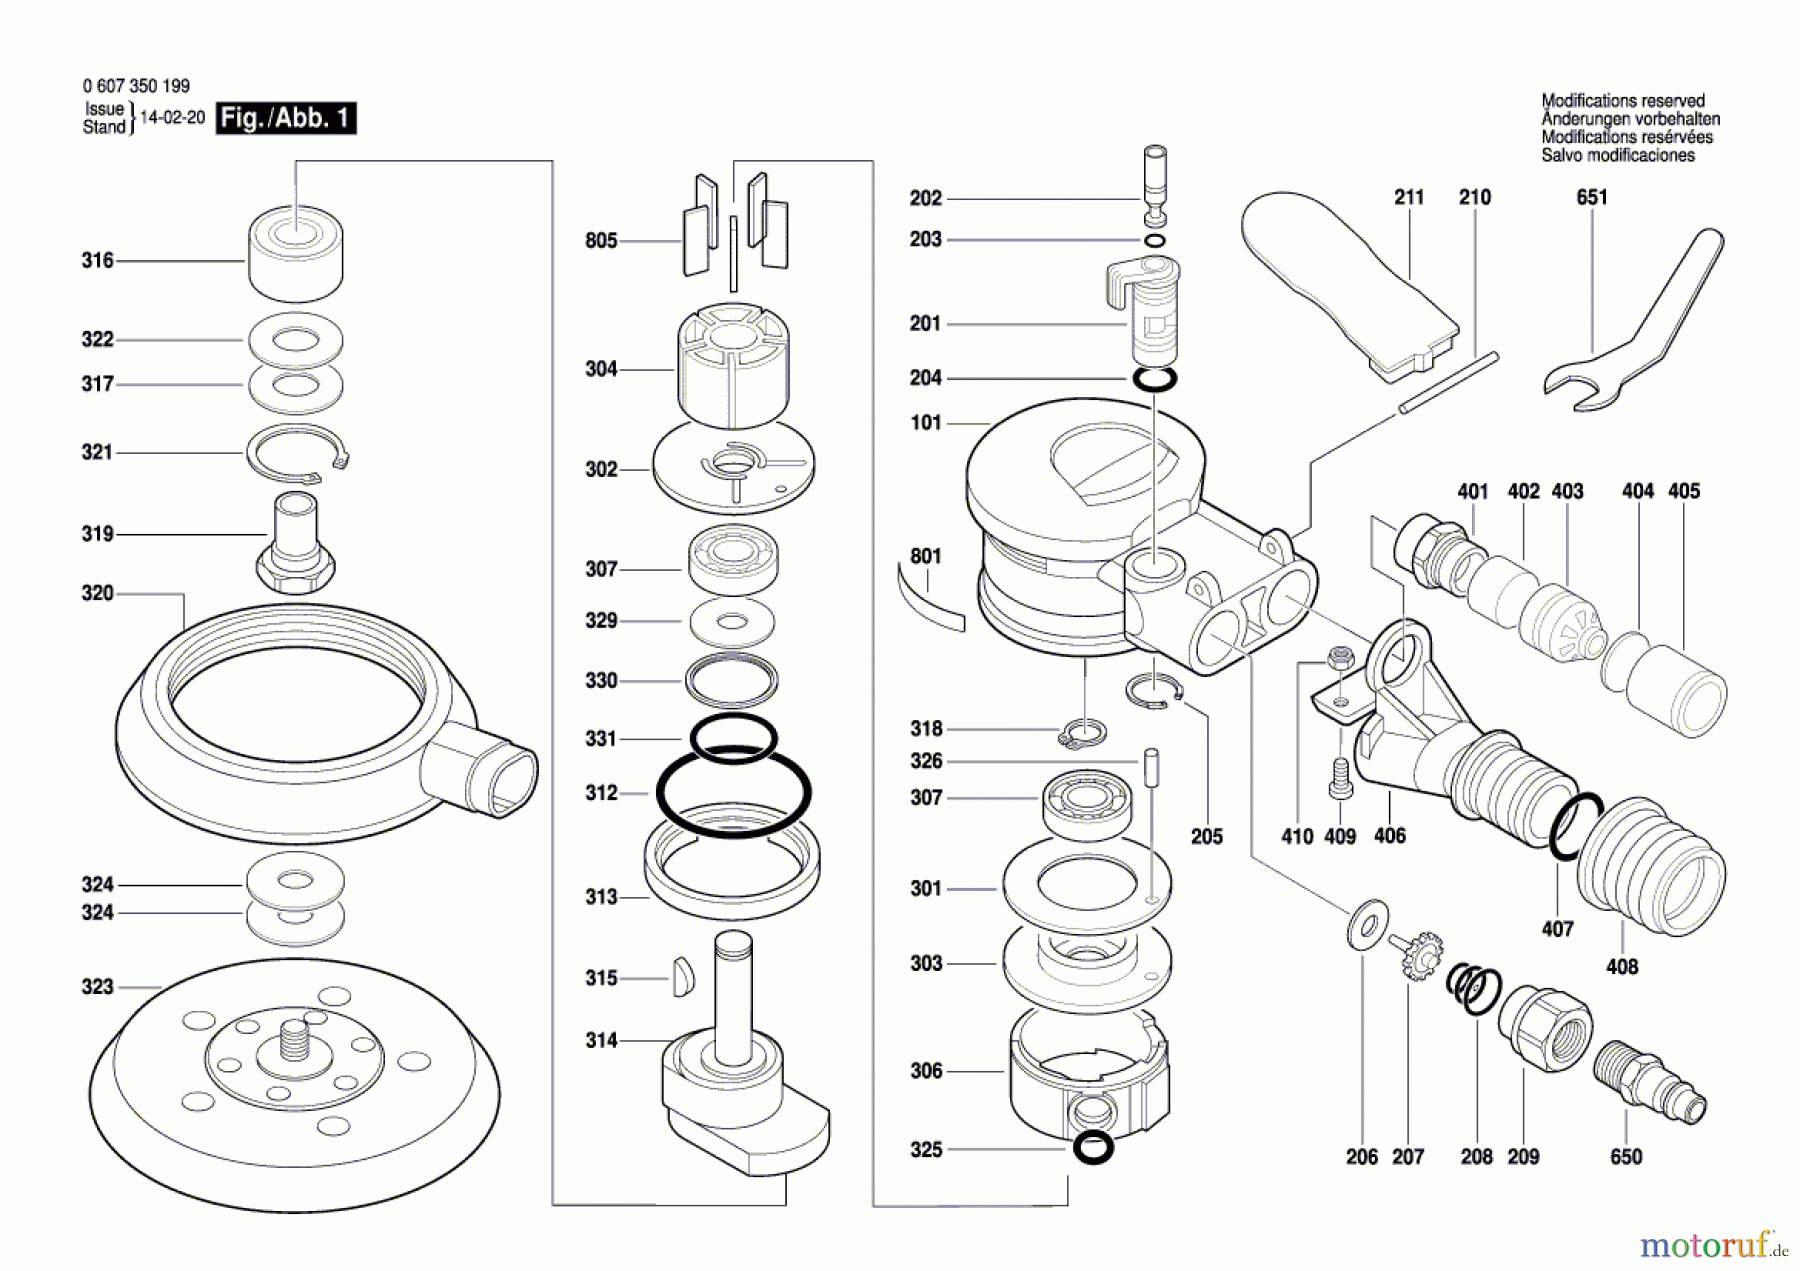  Bosch Werkzeug Exzenterschleifer DEX 150-2,5 Seite 1